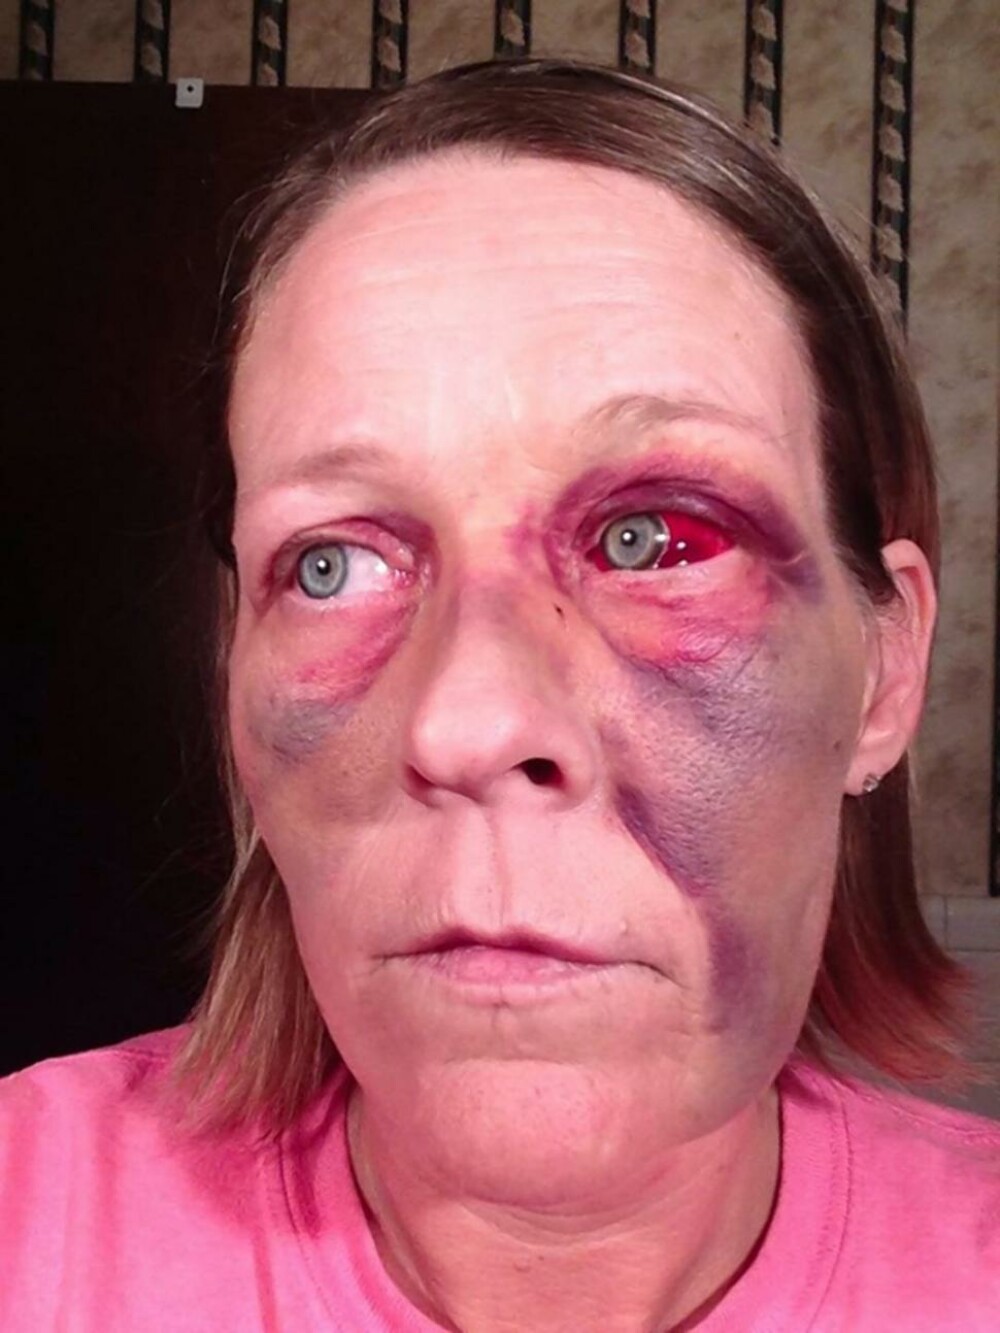 Angela lupta impotriva violentei domestice pe Facebook. Povestile cumplite pe care le spun fotografiile ei - Imaginea 1